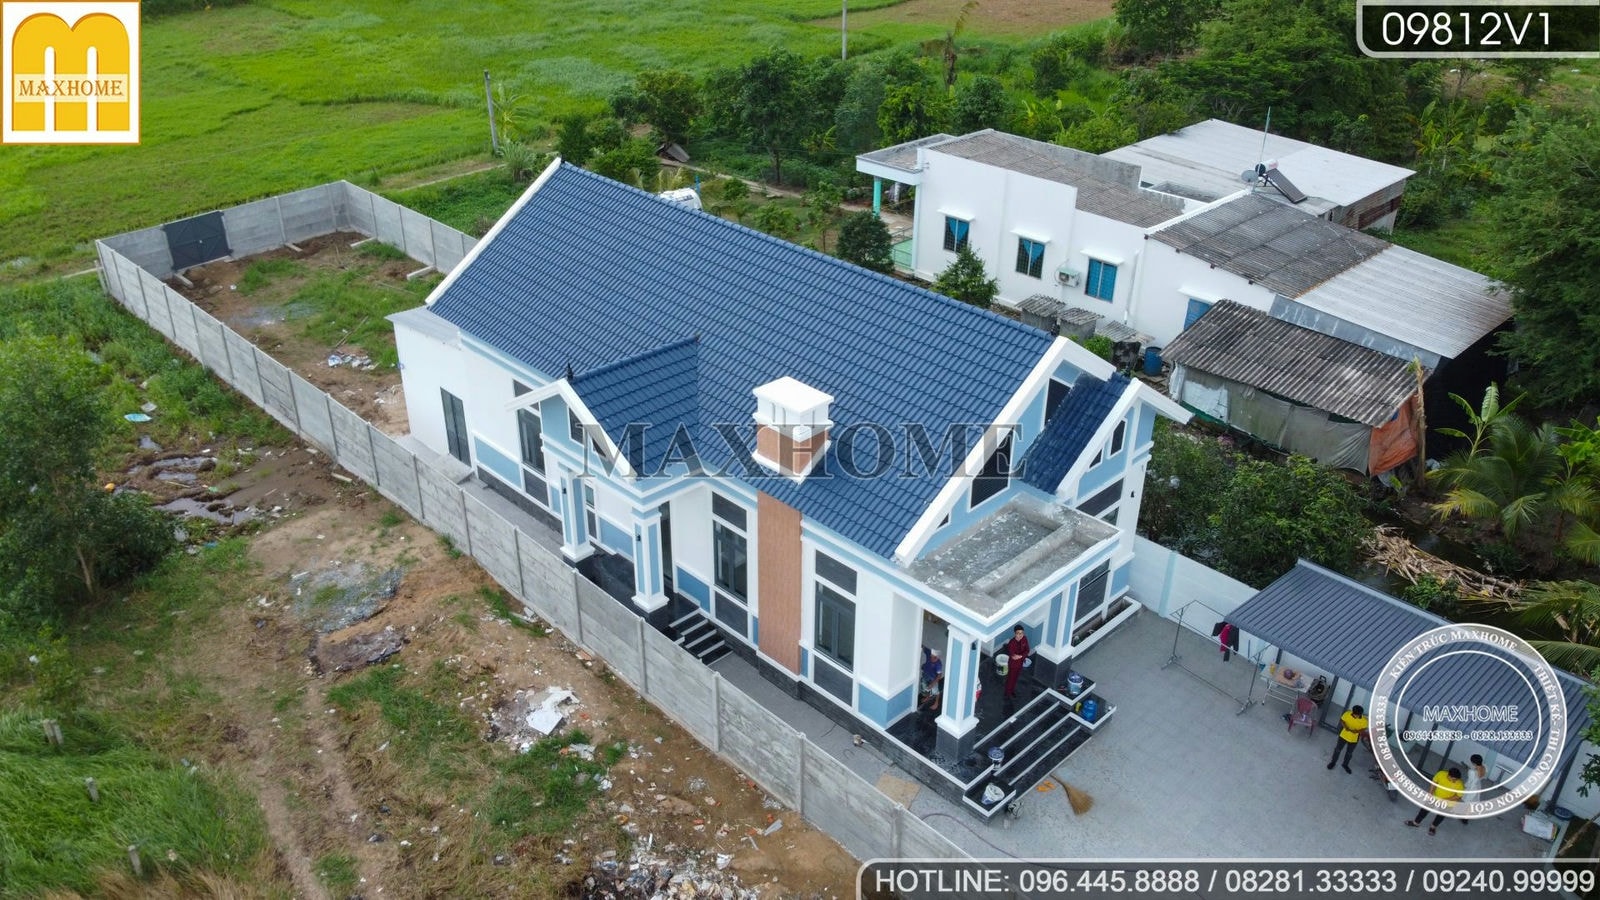 Thực tế ngôi nhà vườn mái Thái quá đẹp đã hoàn thiện 95% tại Long An